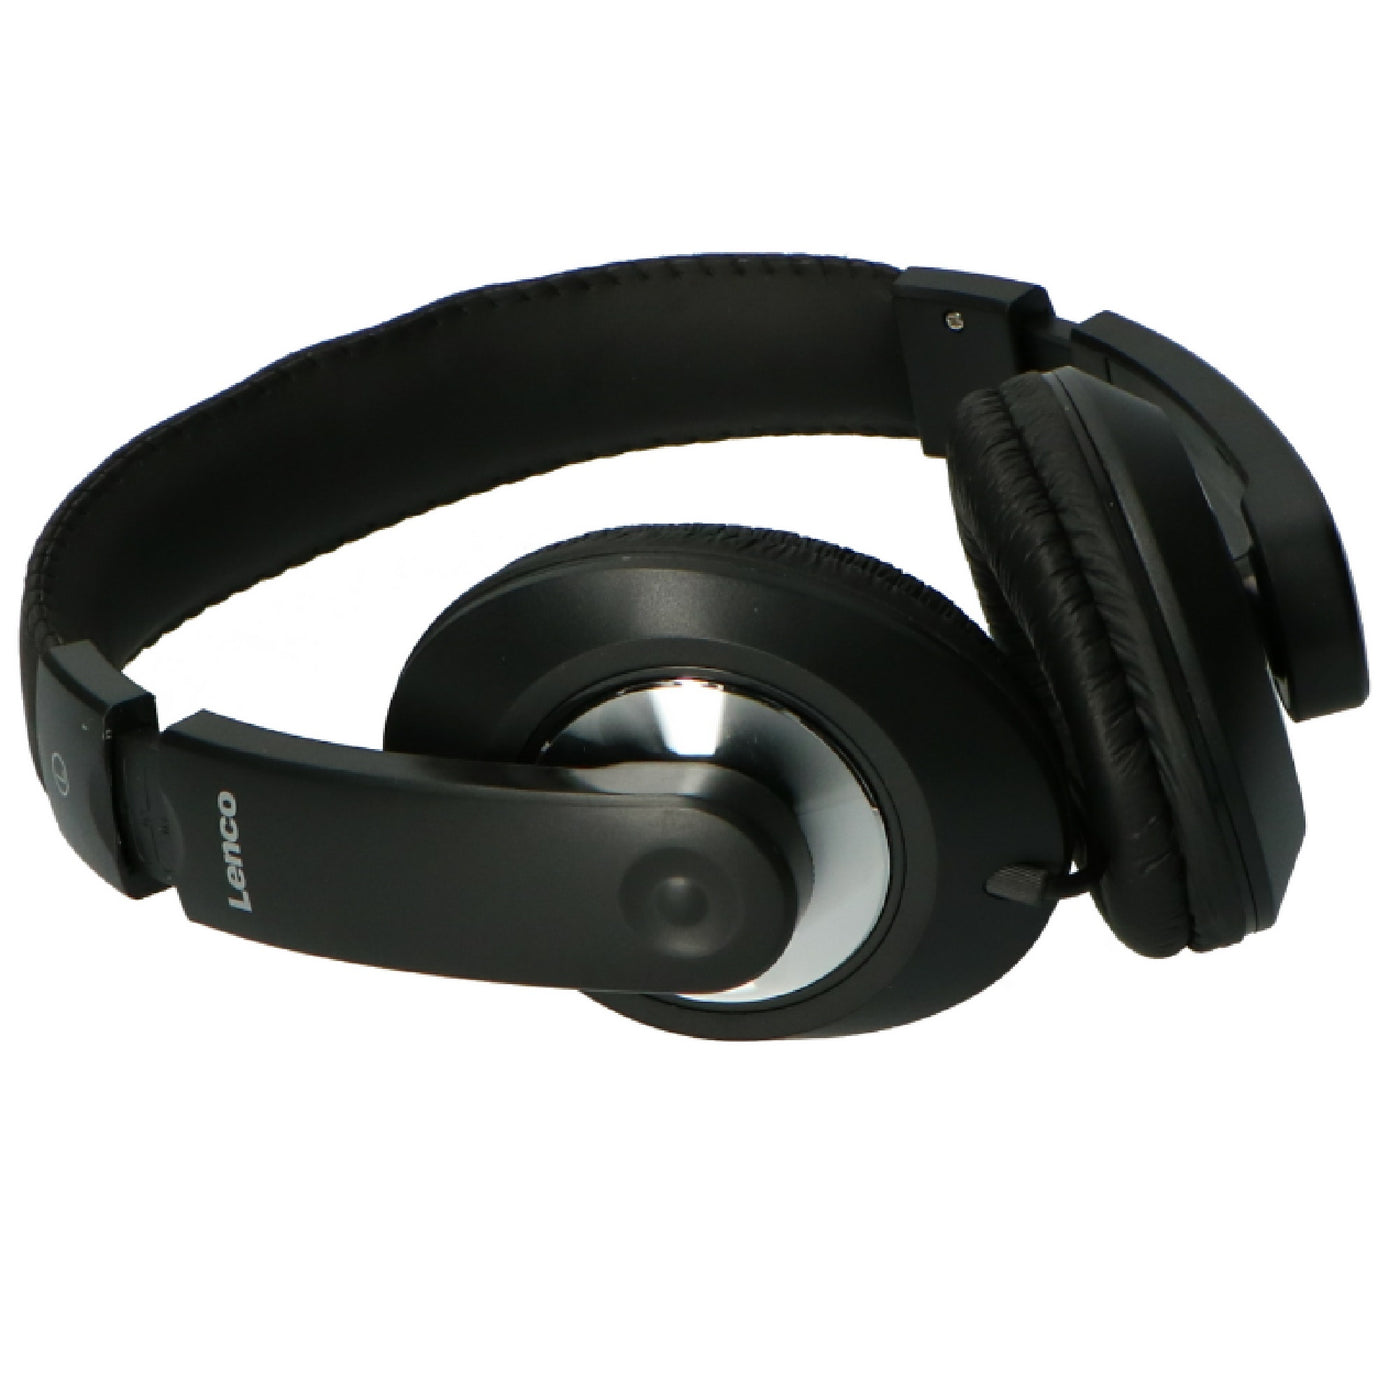 P000590 - DVP Headphones